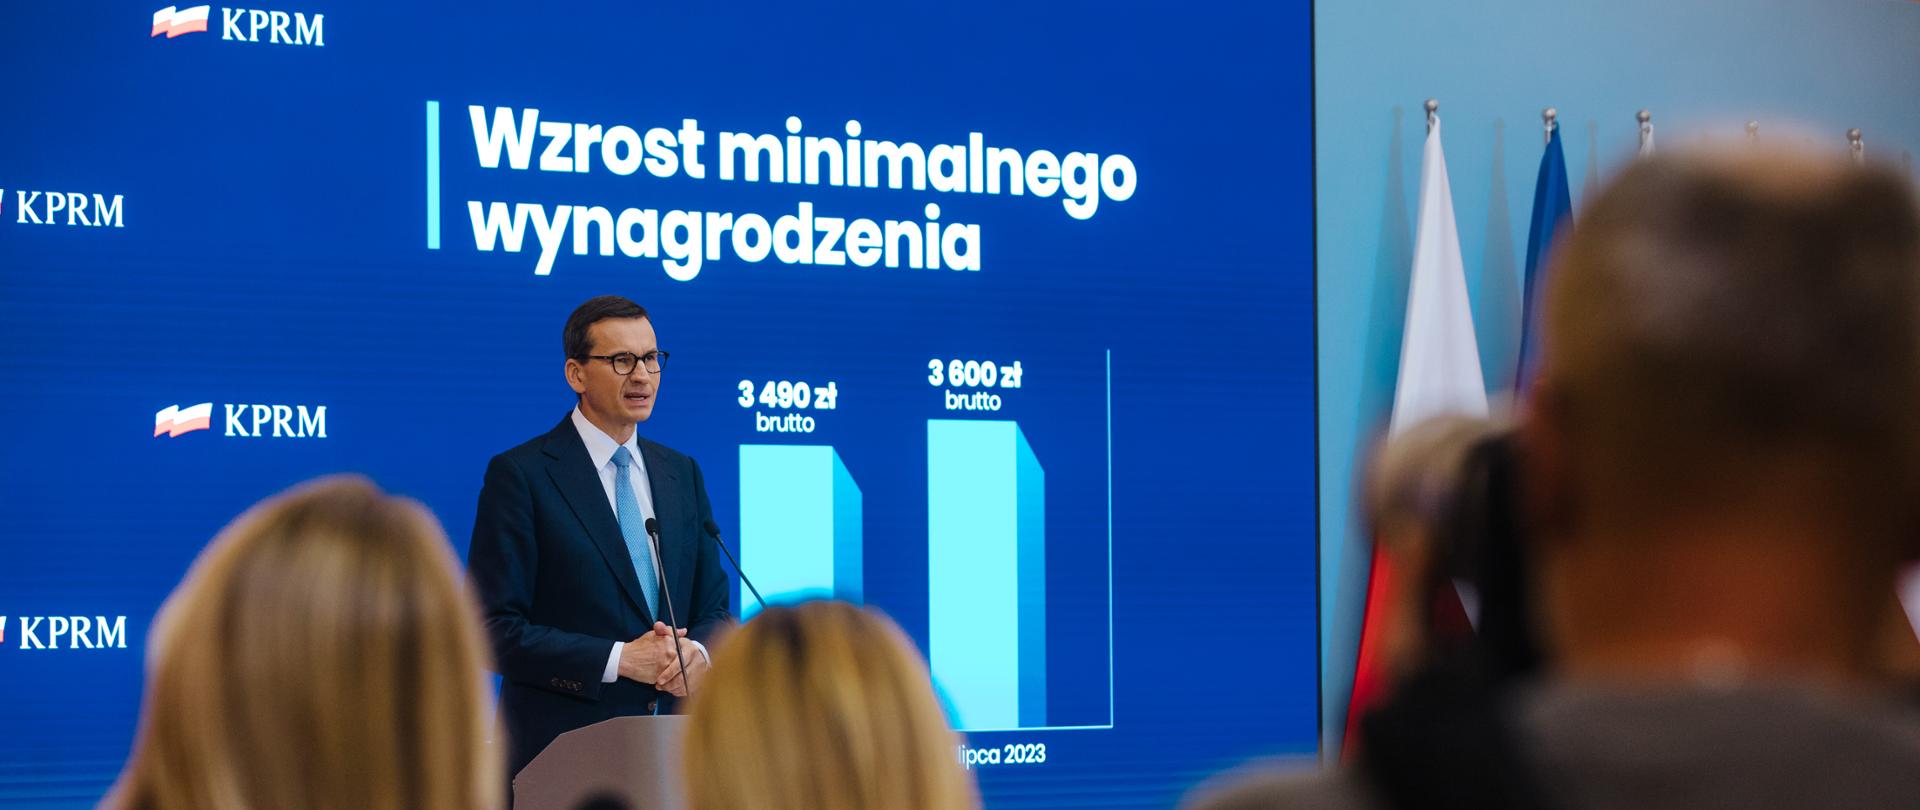 Premier Mateusz Morawiecki i Minister Marlena Maląg podczas konferencji prasowej w KPRM nt. wzrostu płacy minimalnej.